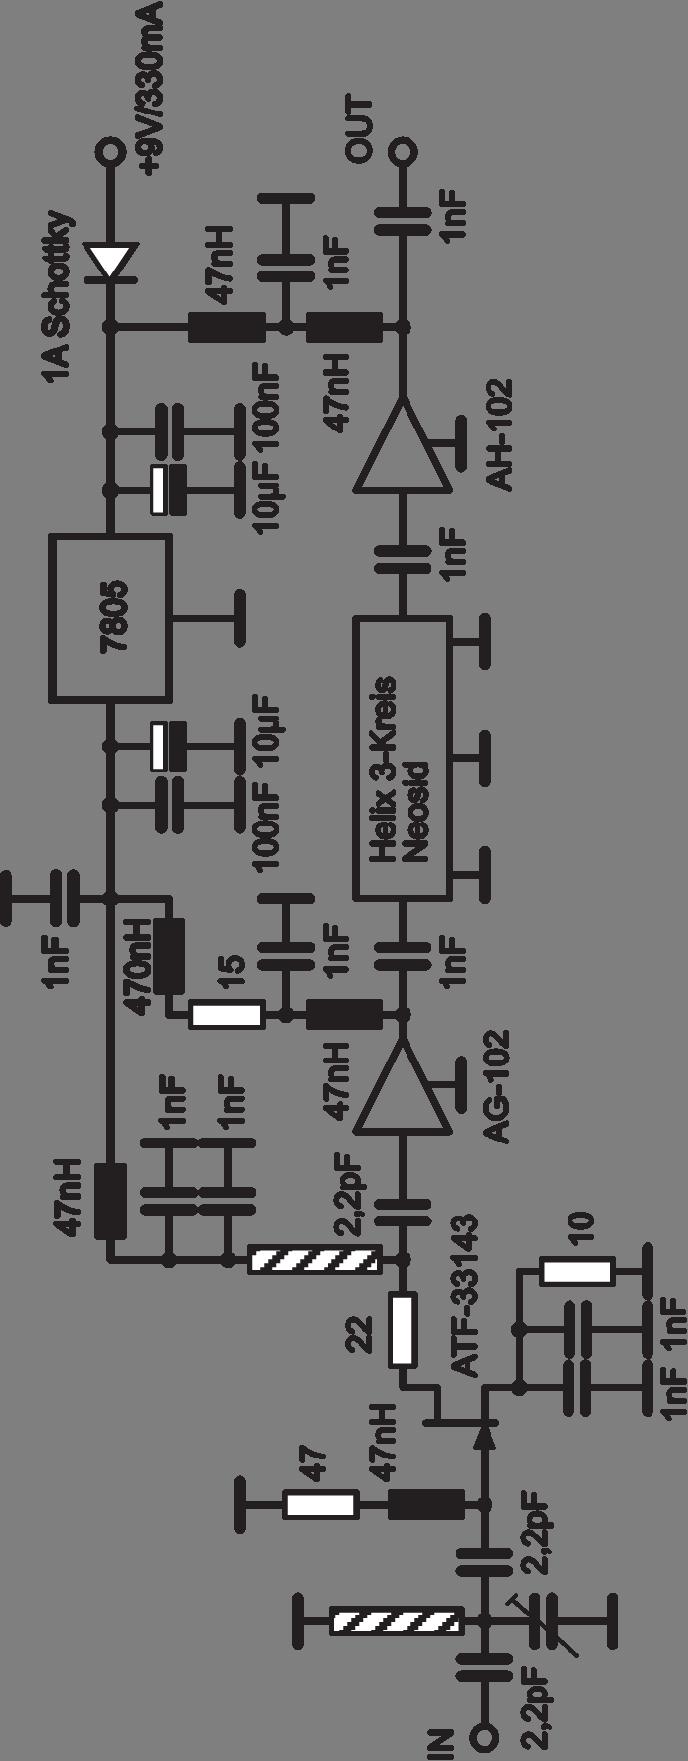 Schaltbild Vorverstärker ATF 33143 F = 0,5